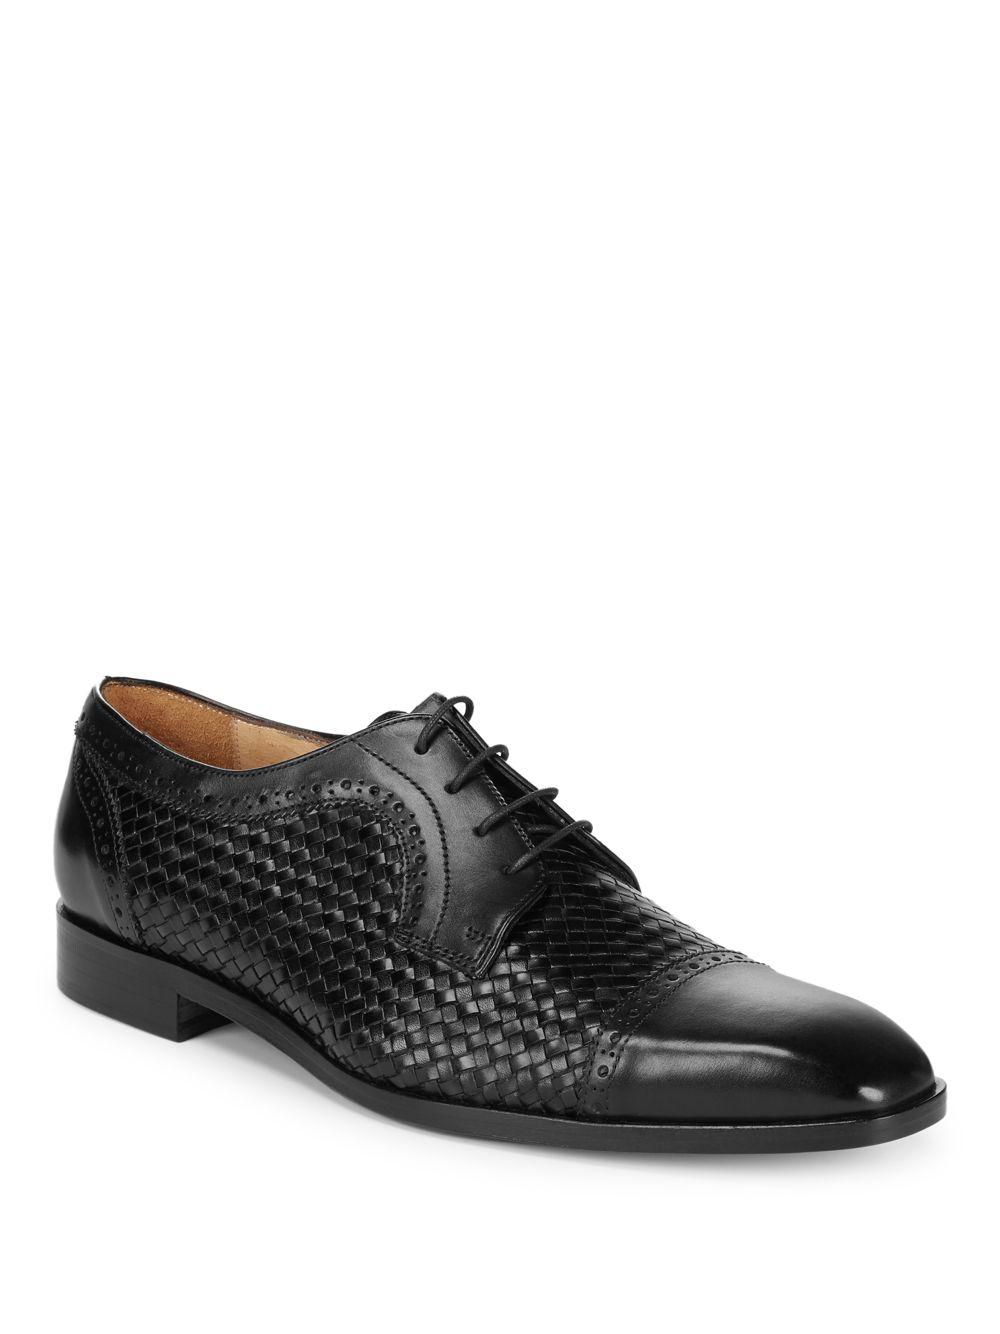 Lyst - Saks Fifth Avenue Woven Captoe Dress Shoe in Black for Men